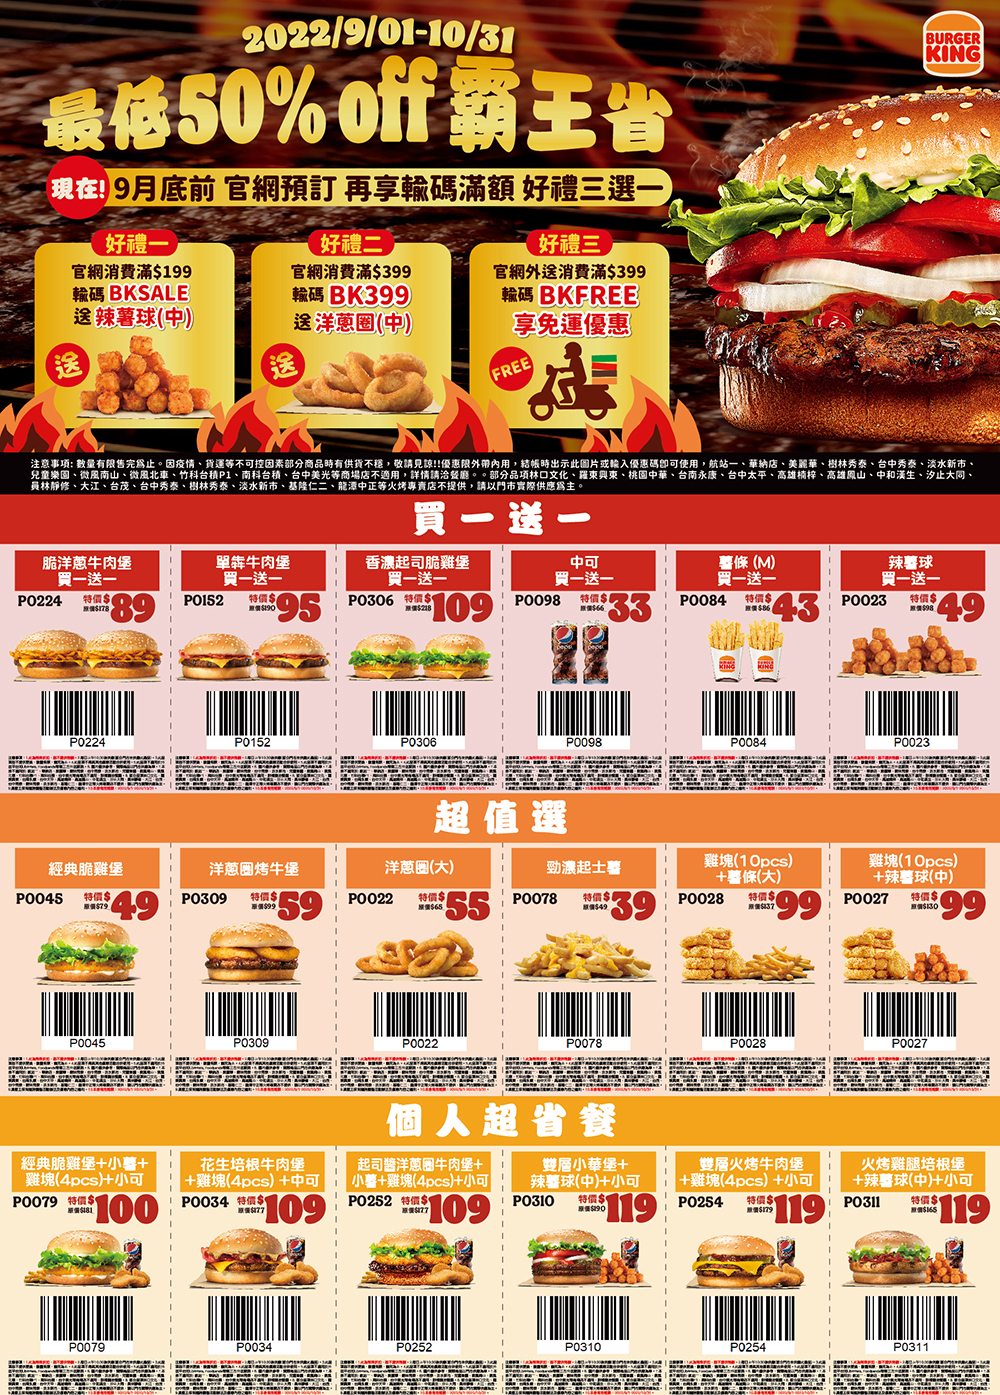 漢堡王「10 月優惠券」一覽表